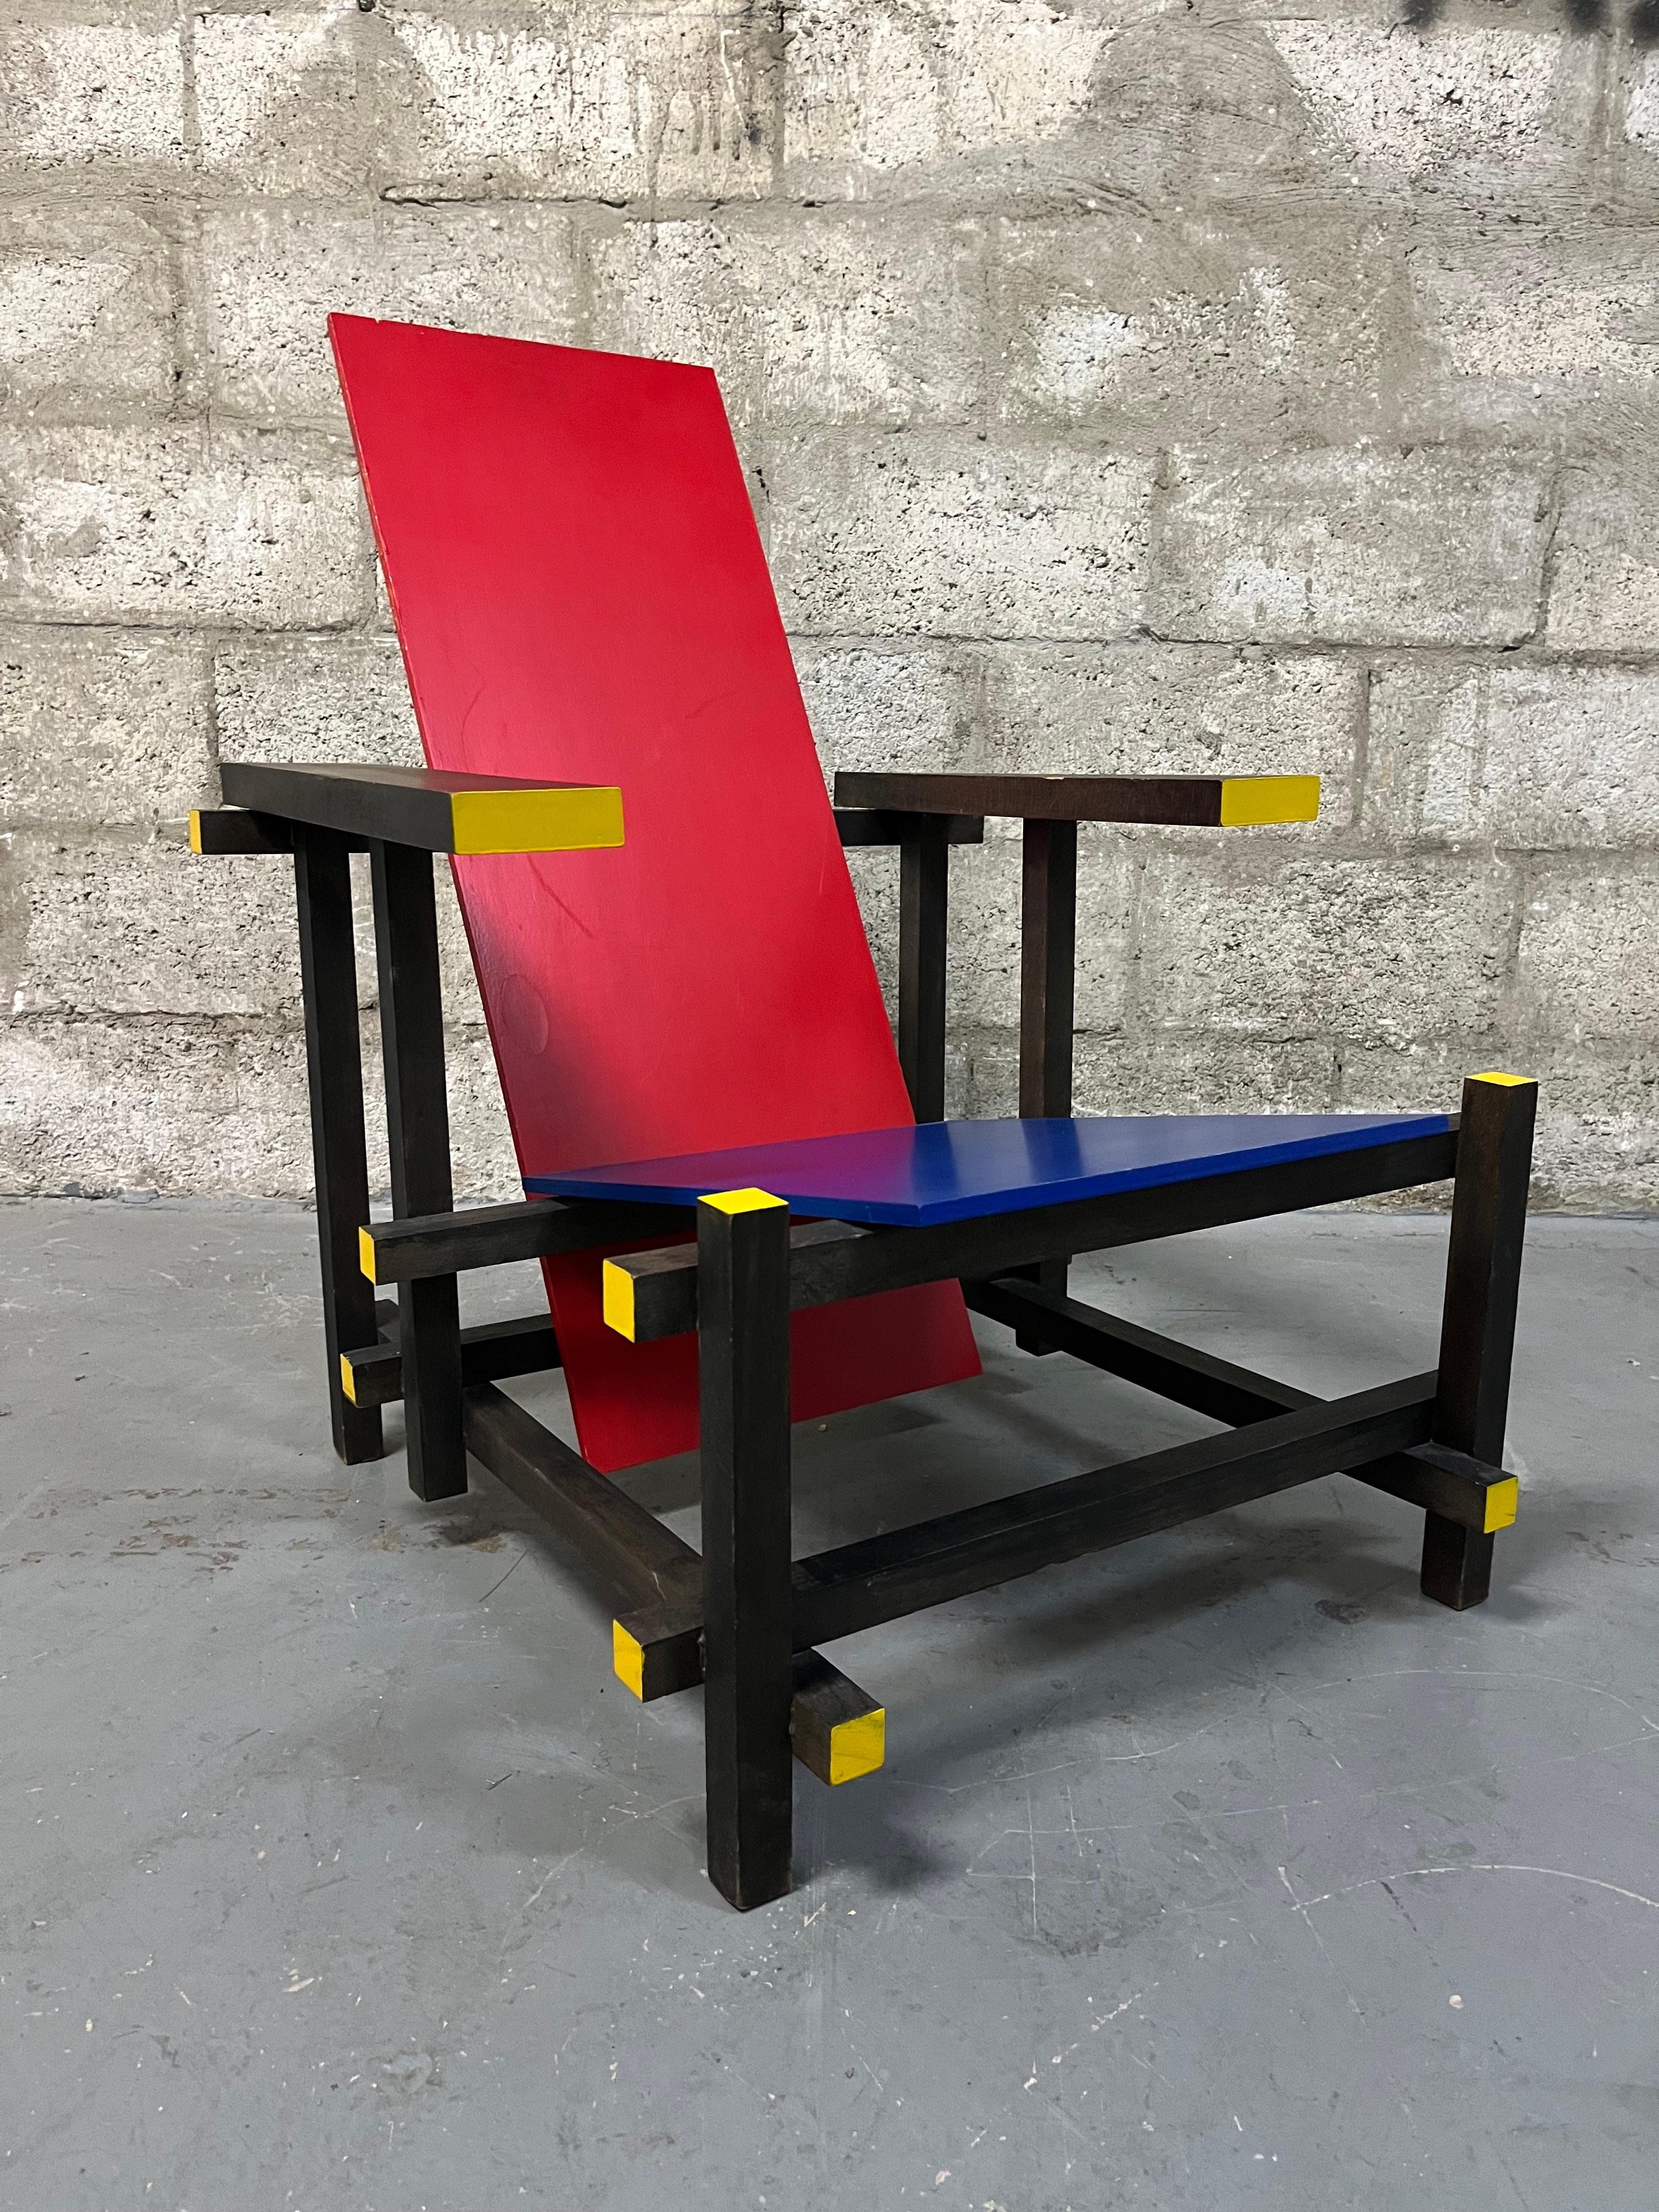 Vintage Handgefertigte Reproduktion von Gerrit Rietveld's Red and Blue Chair. Circa 1960er Jahre
Der 1917 von dem niederländischen Designer Gerrit Rietveld entworfene Red and Blue Chair ist vielleicht einer der einflussreichsten und bekanntesten